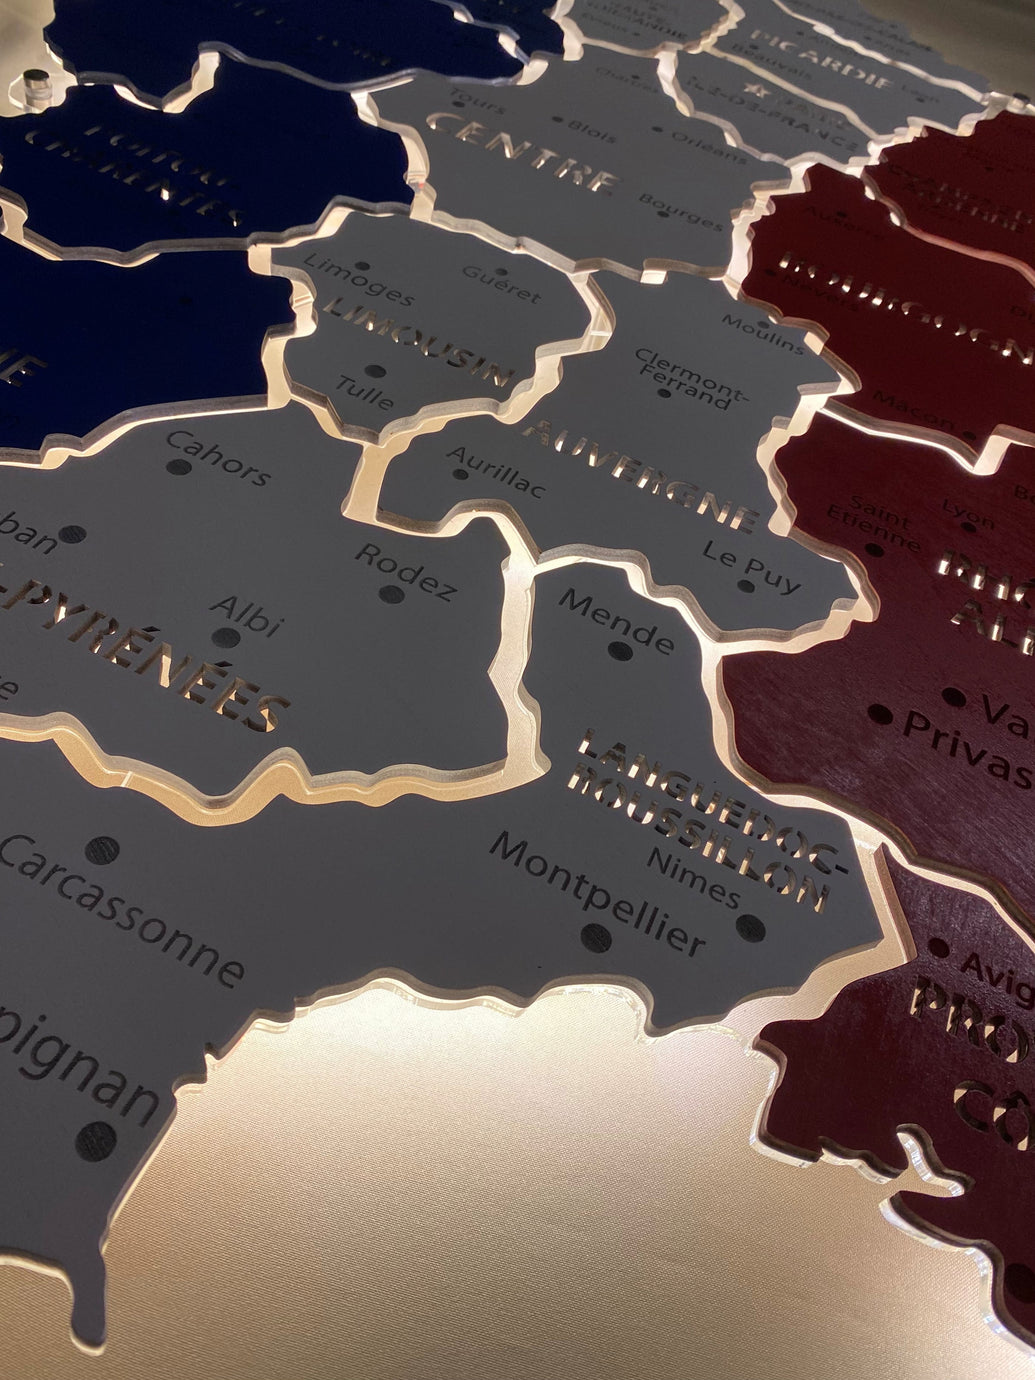 Карта Франції на акрилі з підсвіткою між областями колір Flag